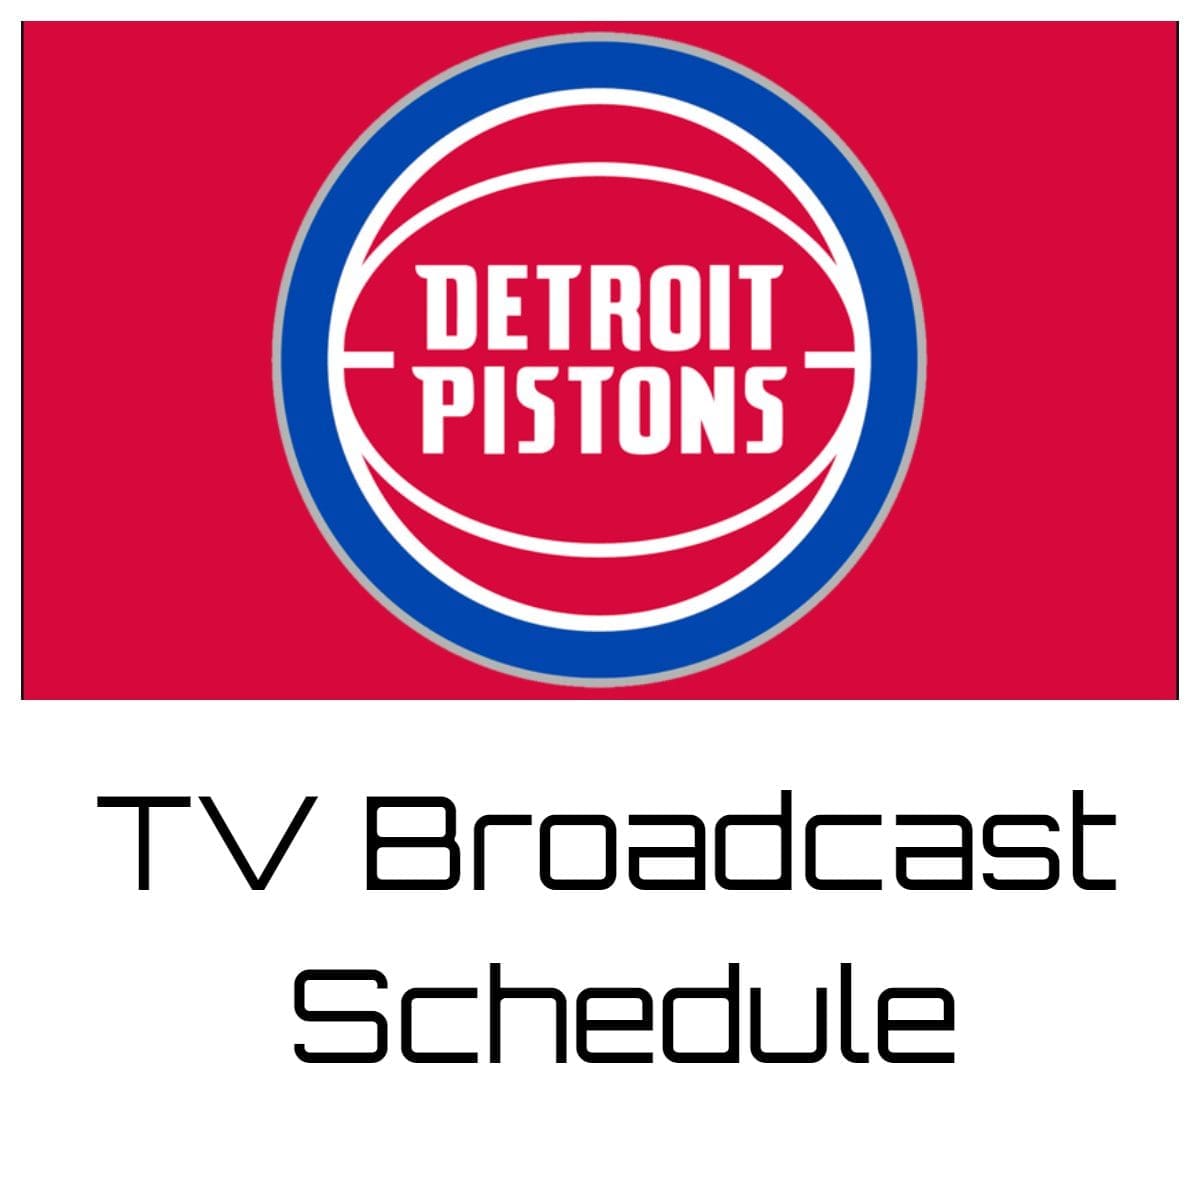 Detroit Pistons TV Broadcast Schedule